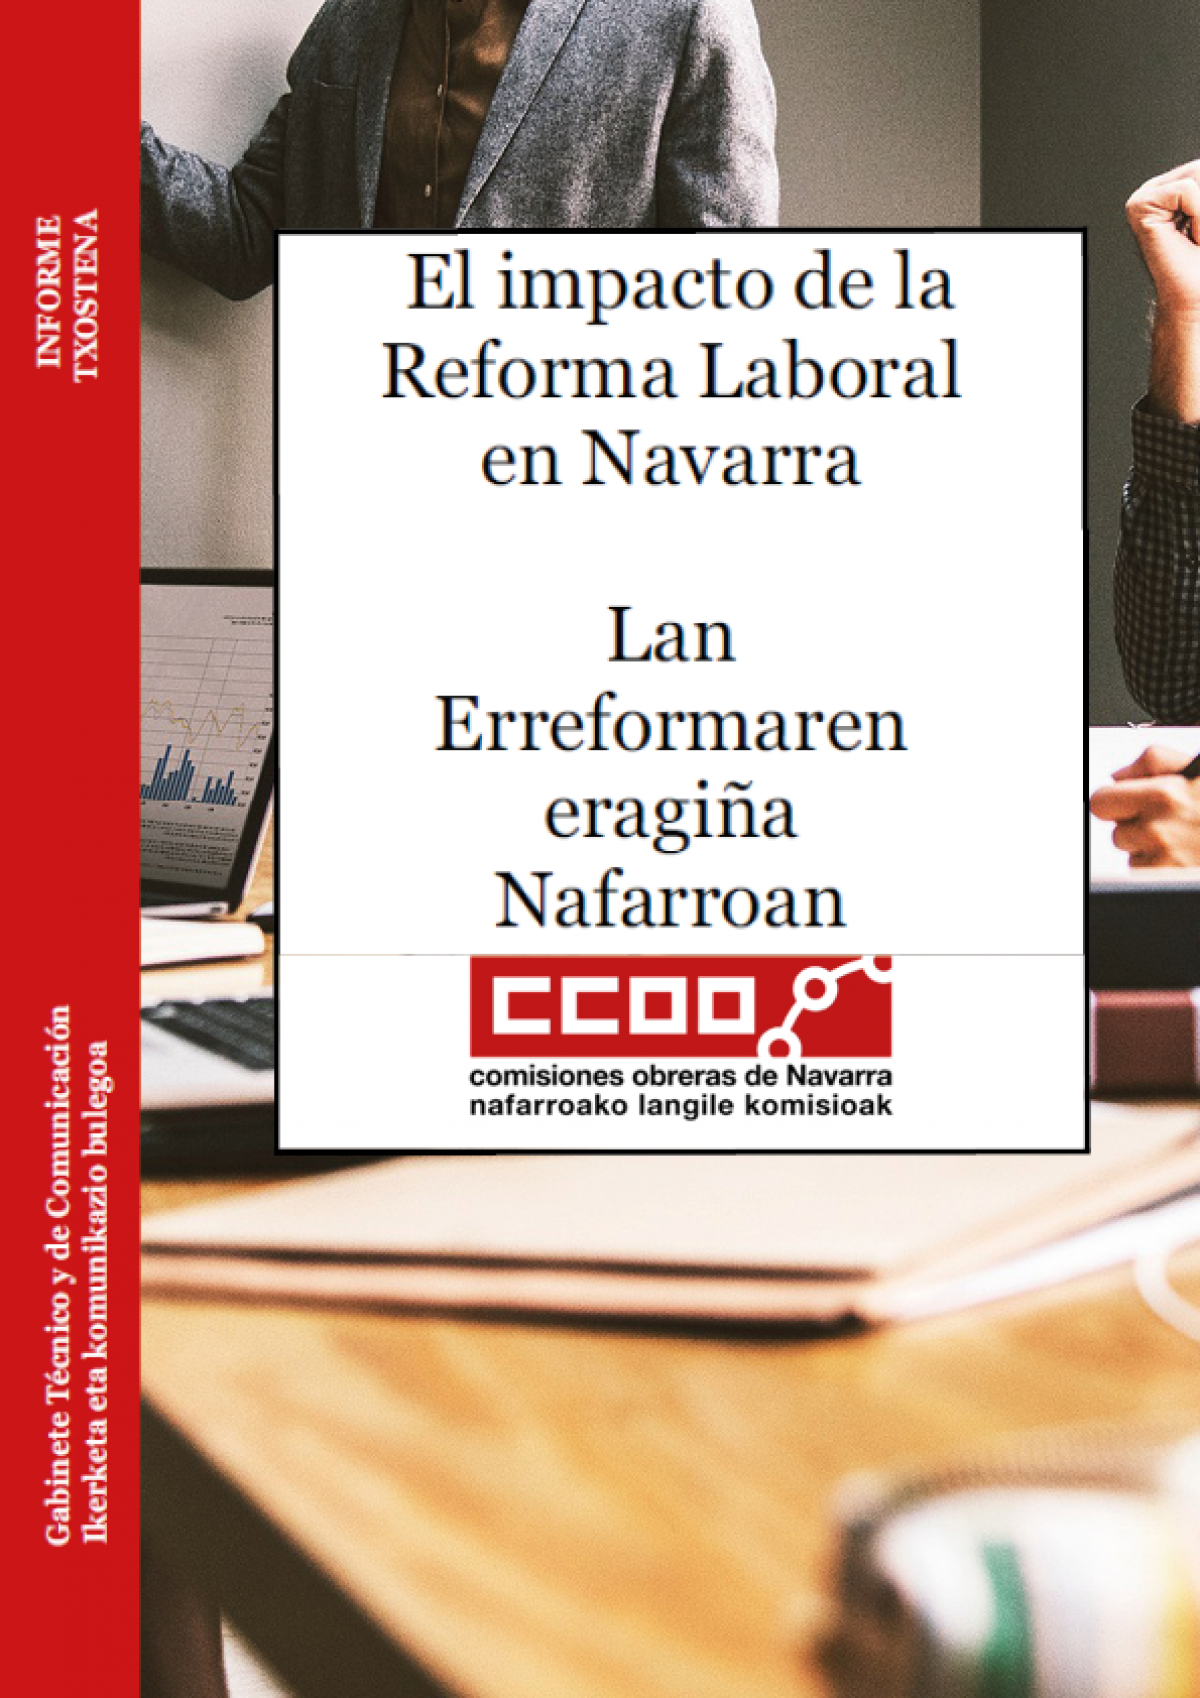 El informe de la Reforma Laboral en Navarra